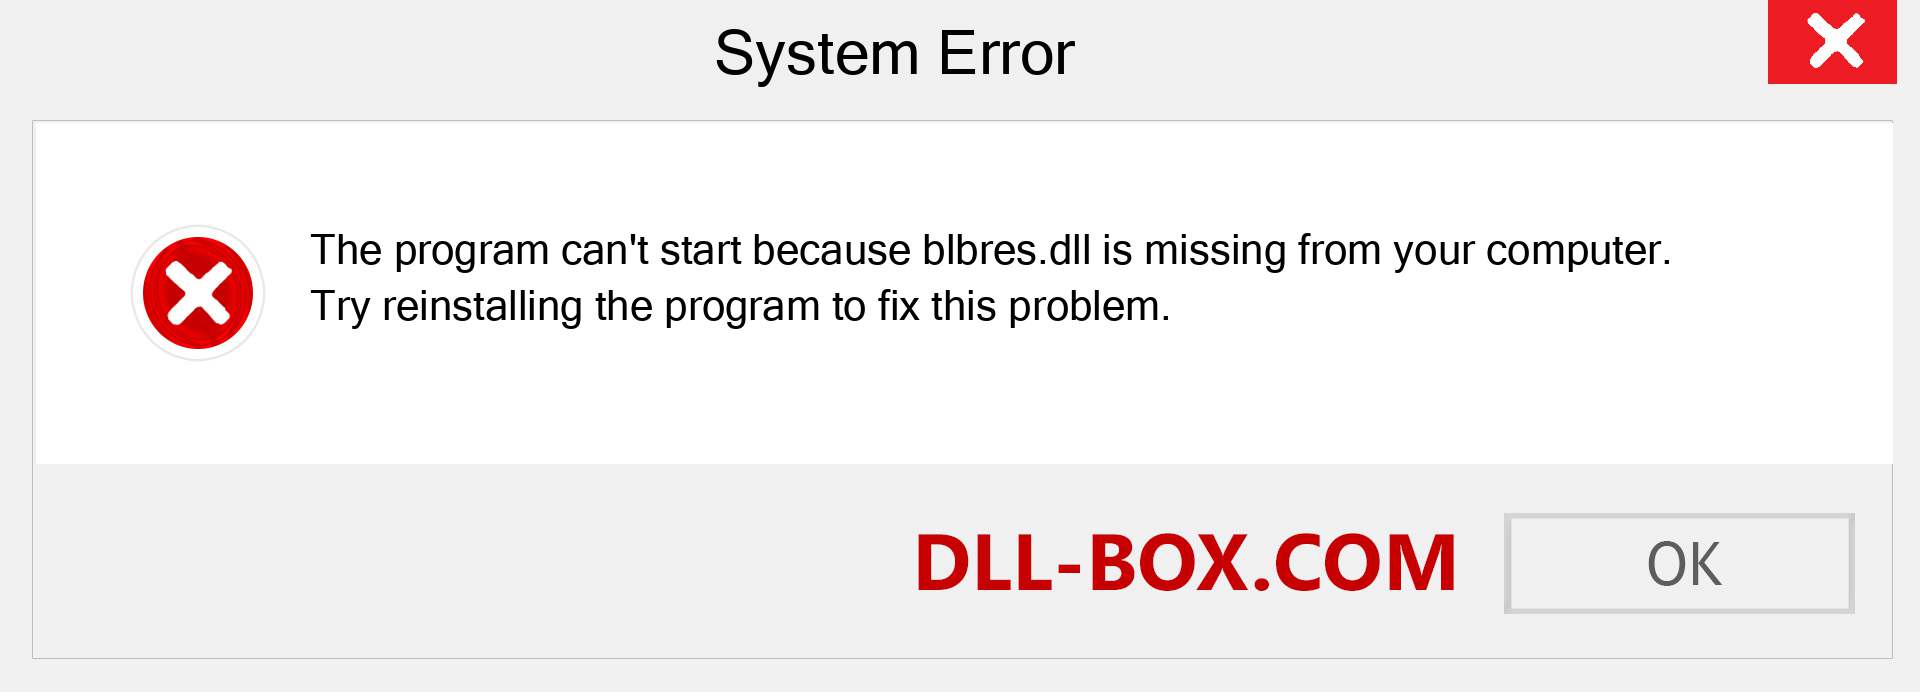  blbres.dll file is missing?. Download for Windows 7, 8, 10 - Fix  blbres dll Missing Error on Windows, photos, images